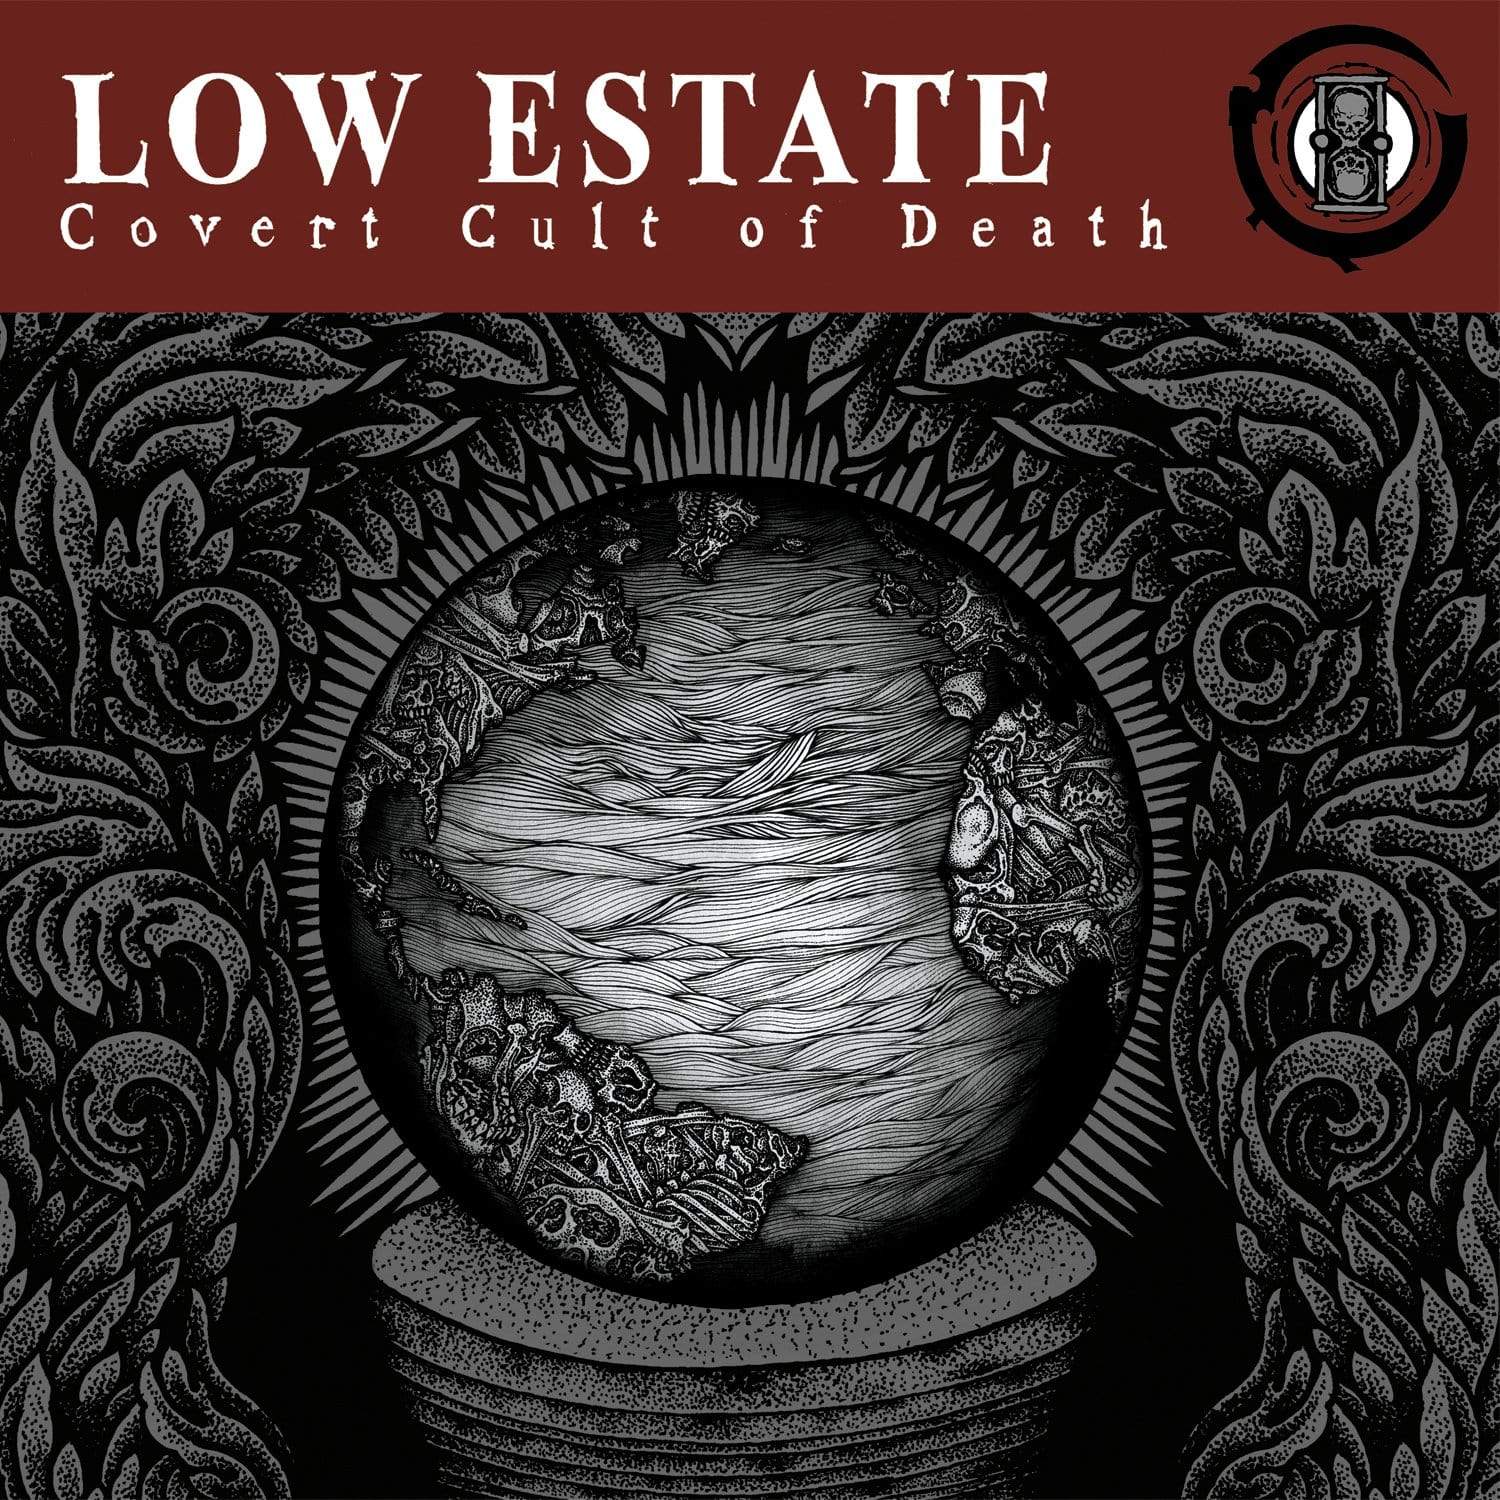 The Flenser CD Low Estate "Covert Cult of Death" CD